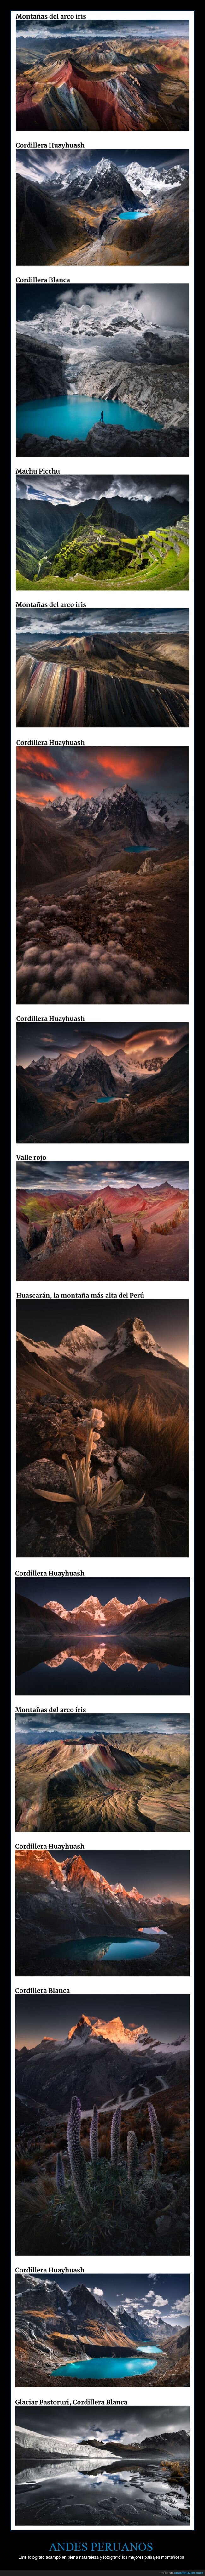 andes peruanos,fotografía,paisajes,montañas